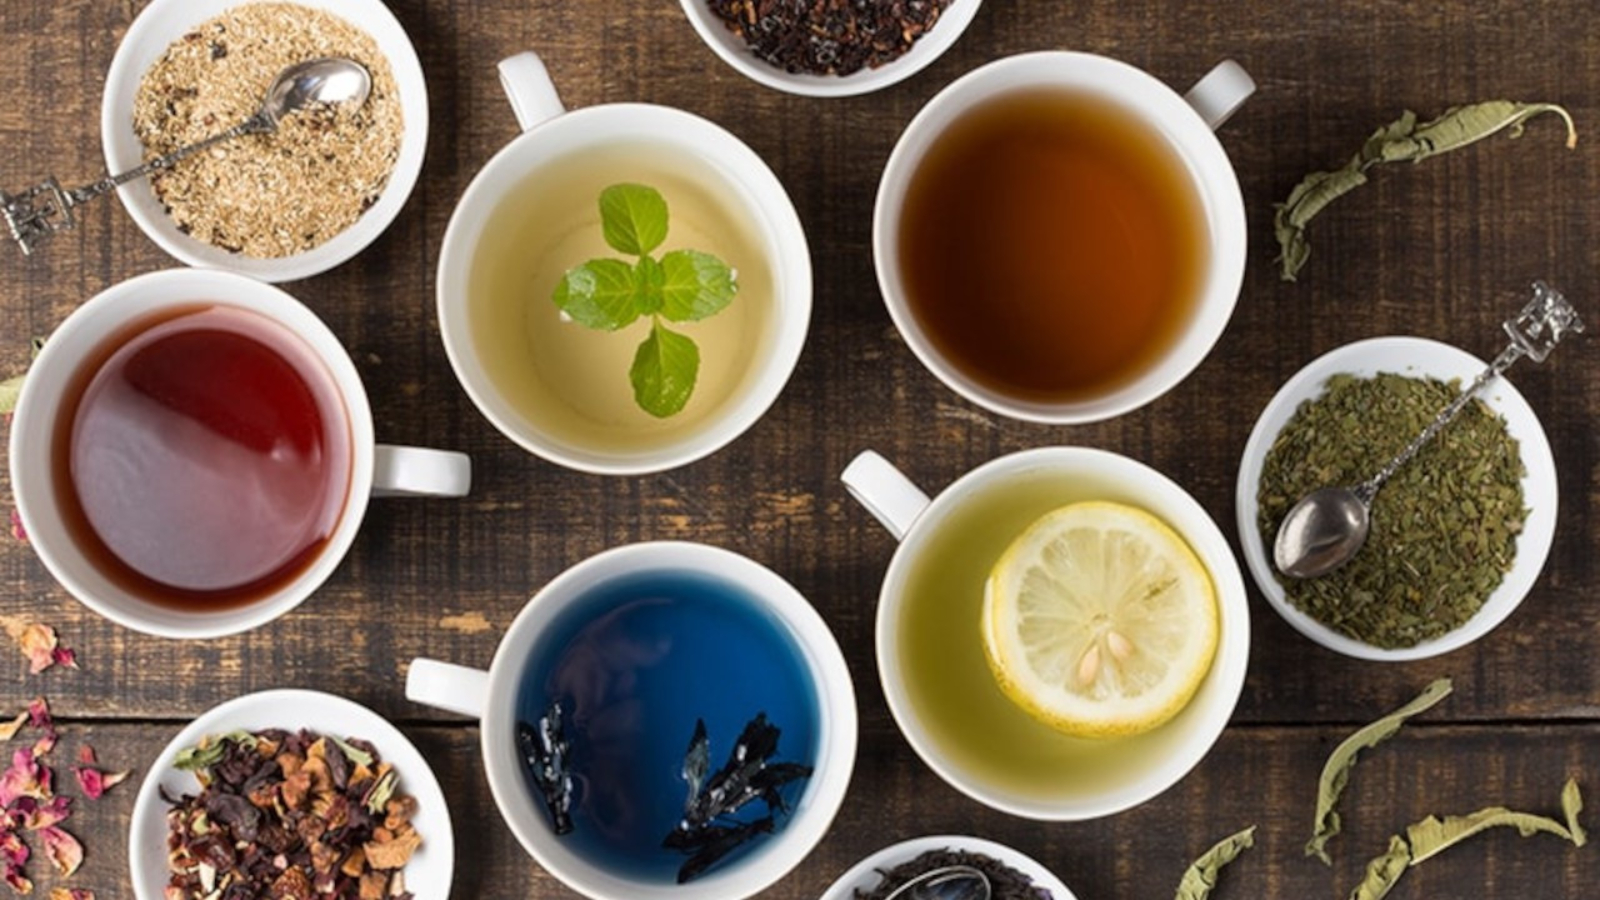 Nar kabuğu ve karabaş otunun etkisiyle: Soğuk algınlığına iyi gelecek bitki çayı ile rahatlamanın keyfini çıkarın!